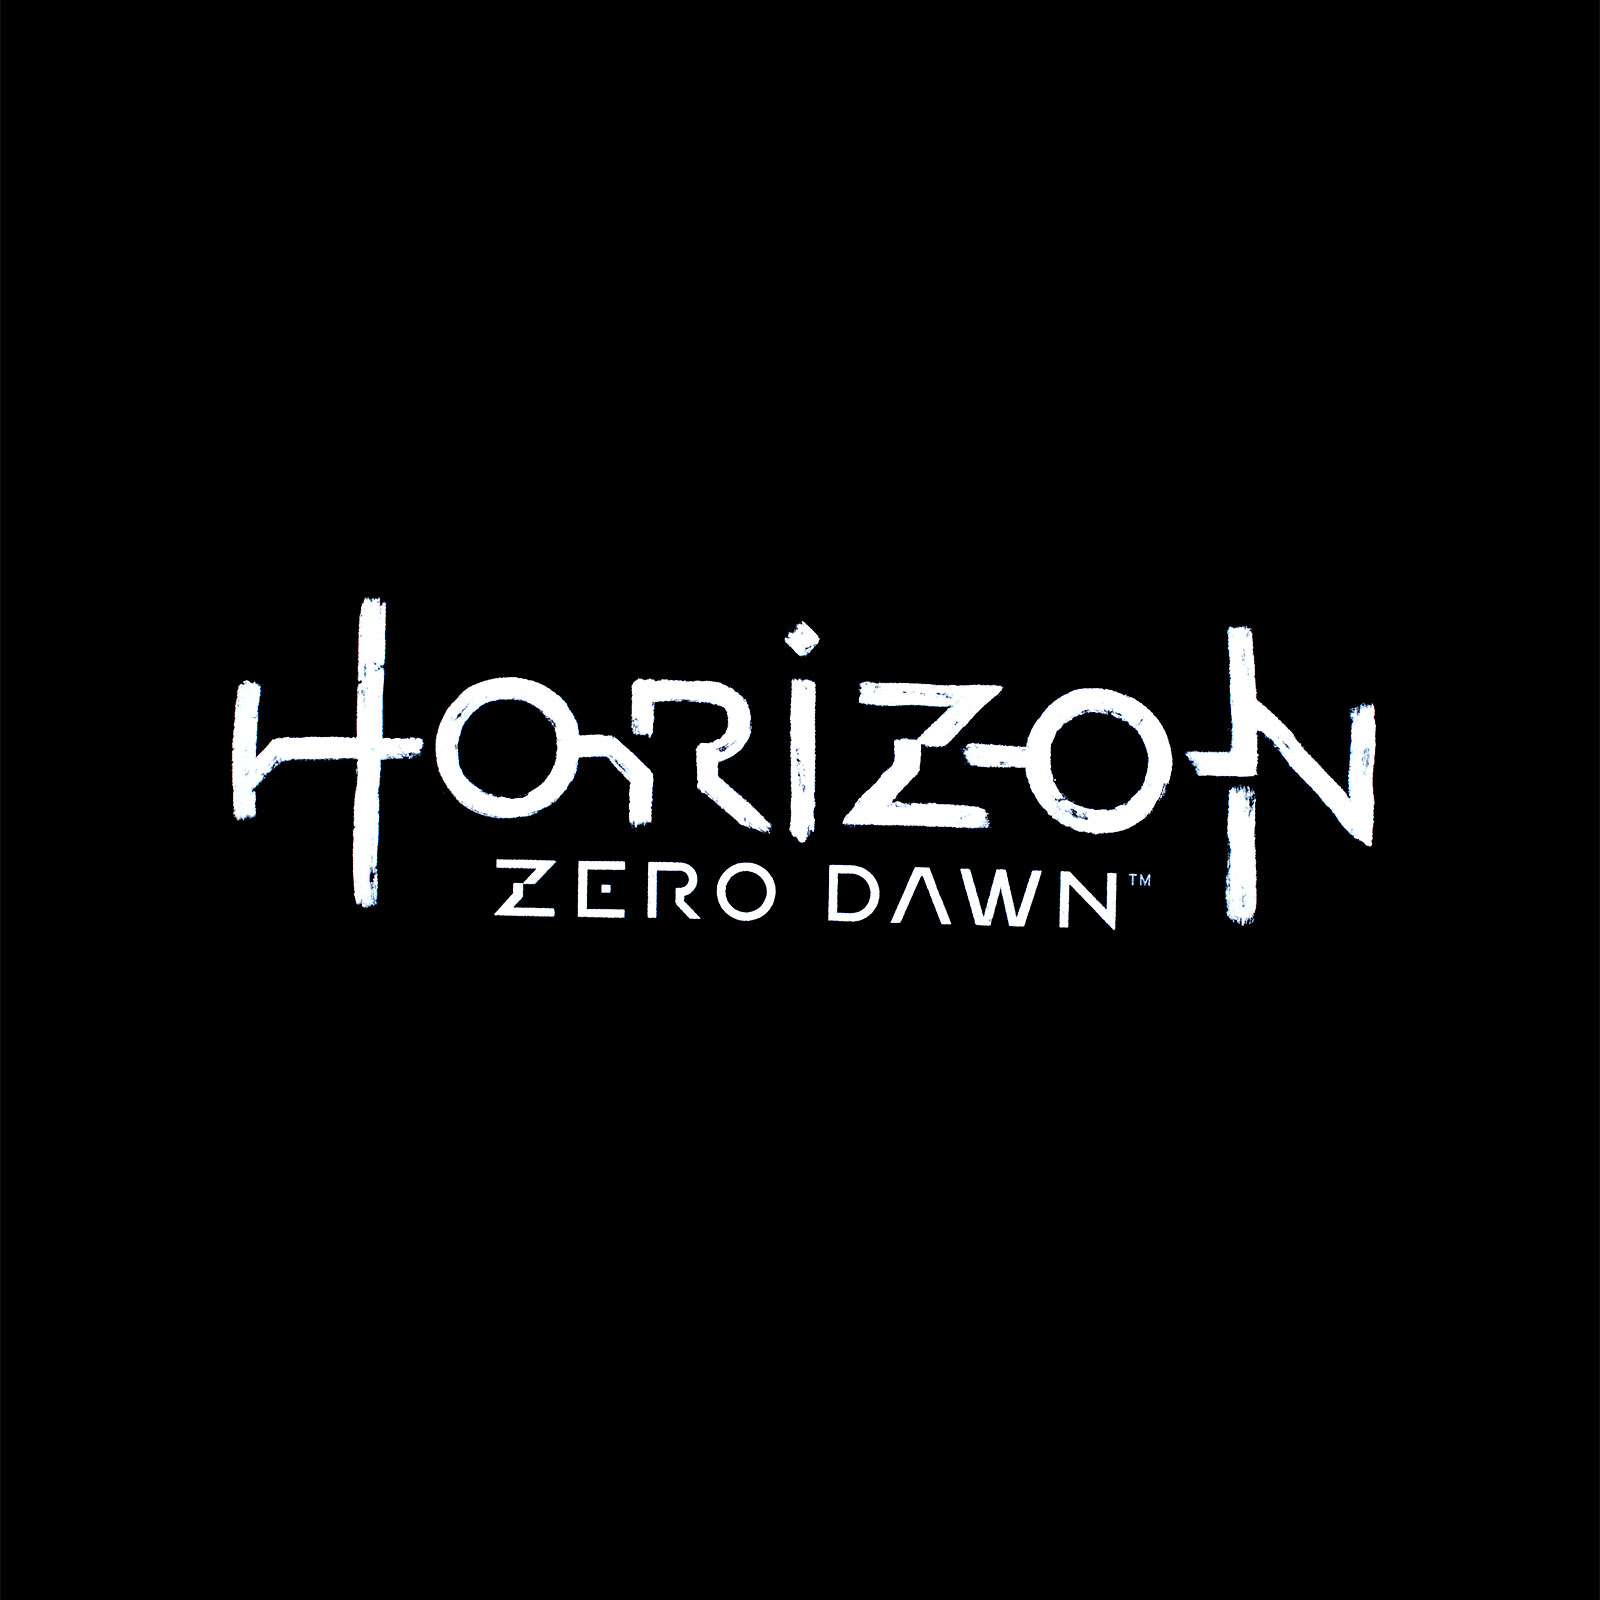 Horizon Zero Dawn - Logo T-Shirt schwarz